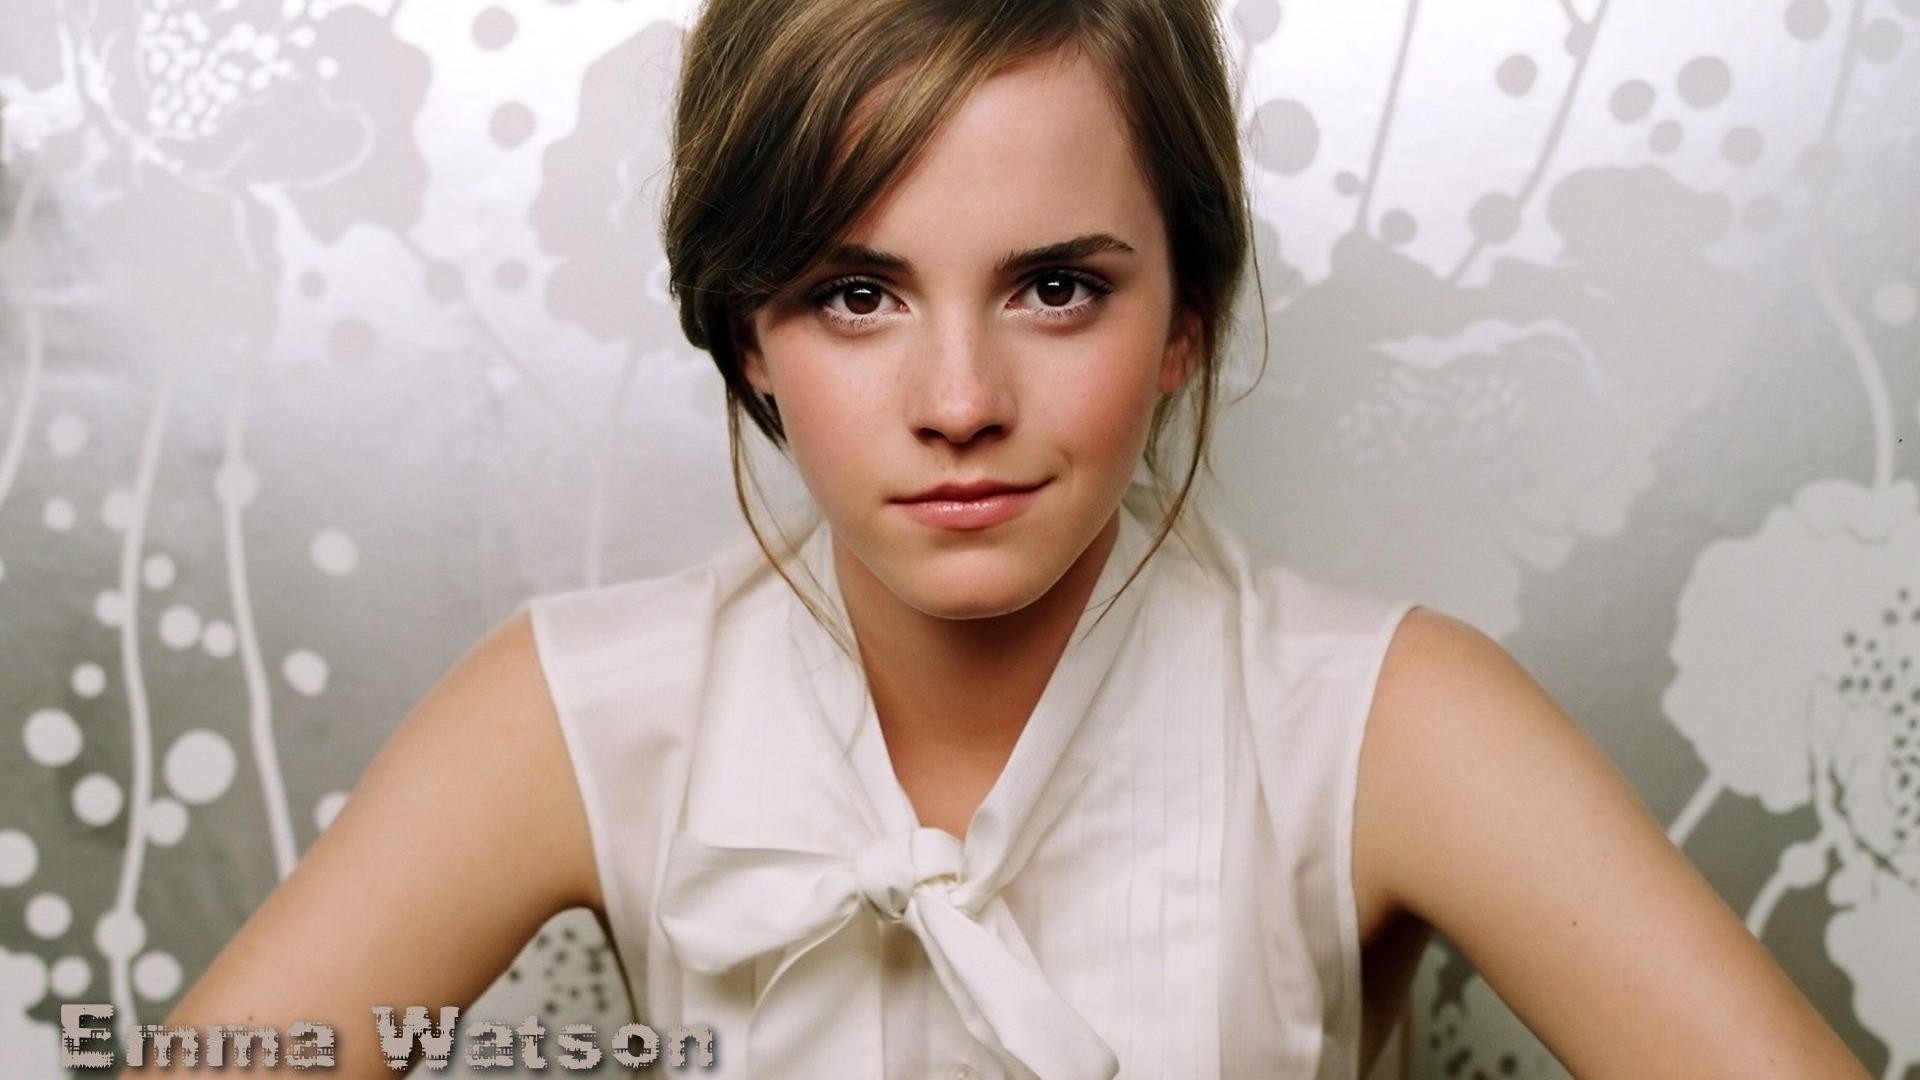 Emma Watson beautiful wallpaper #4 - 1920x1080